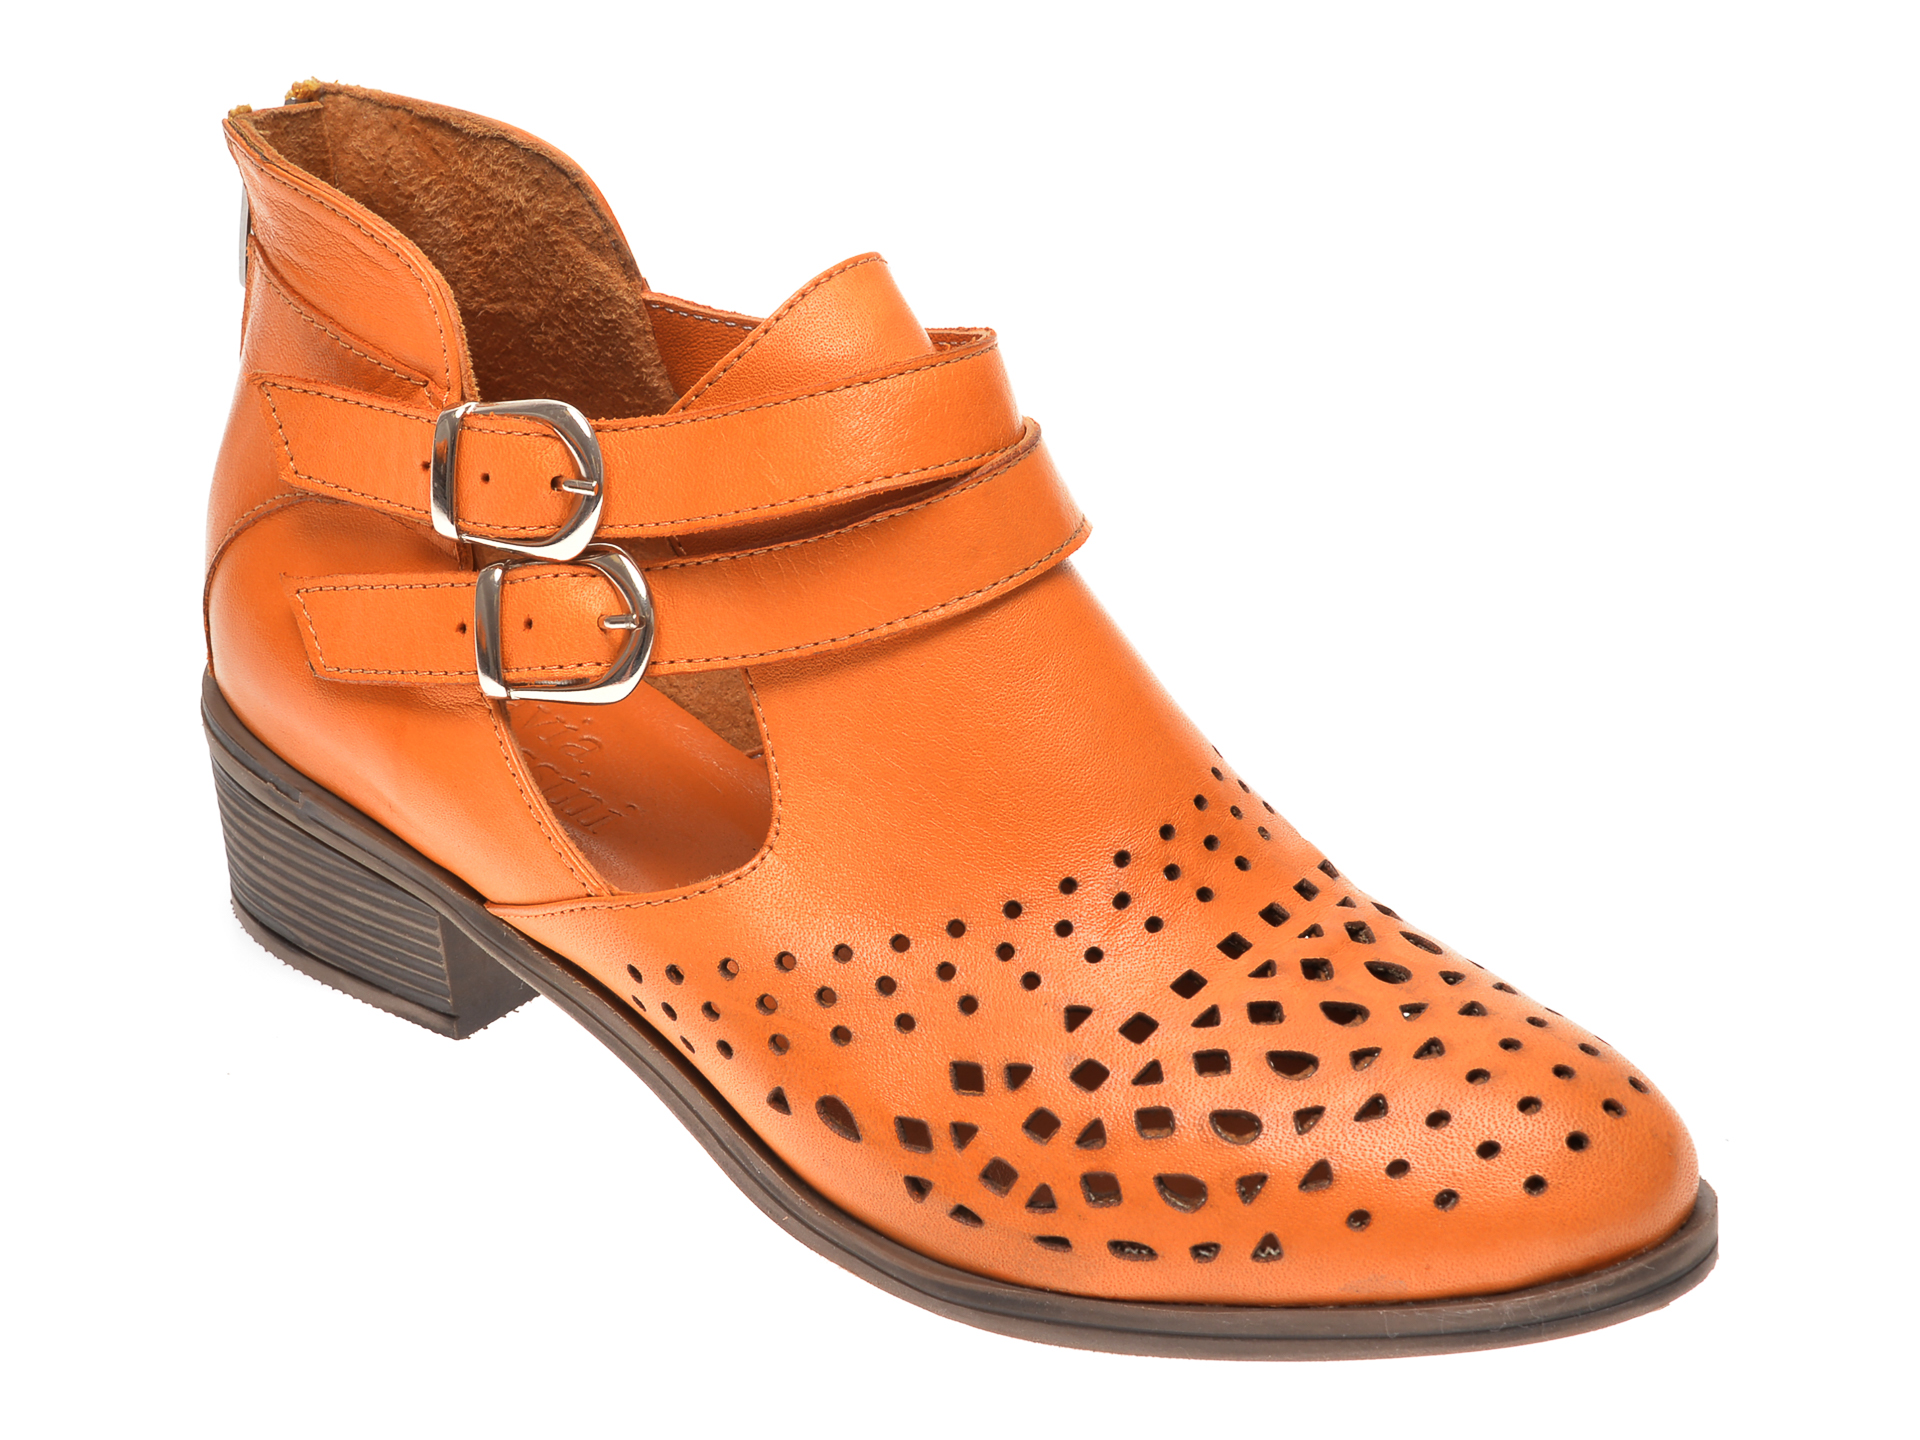 Pantofi FLAVIA PASSINI portocalii, B004, din piele naturala